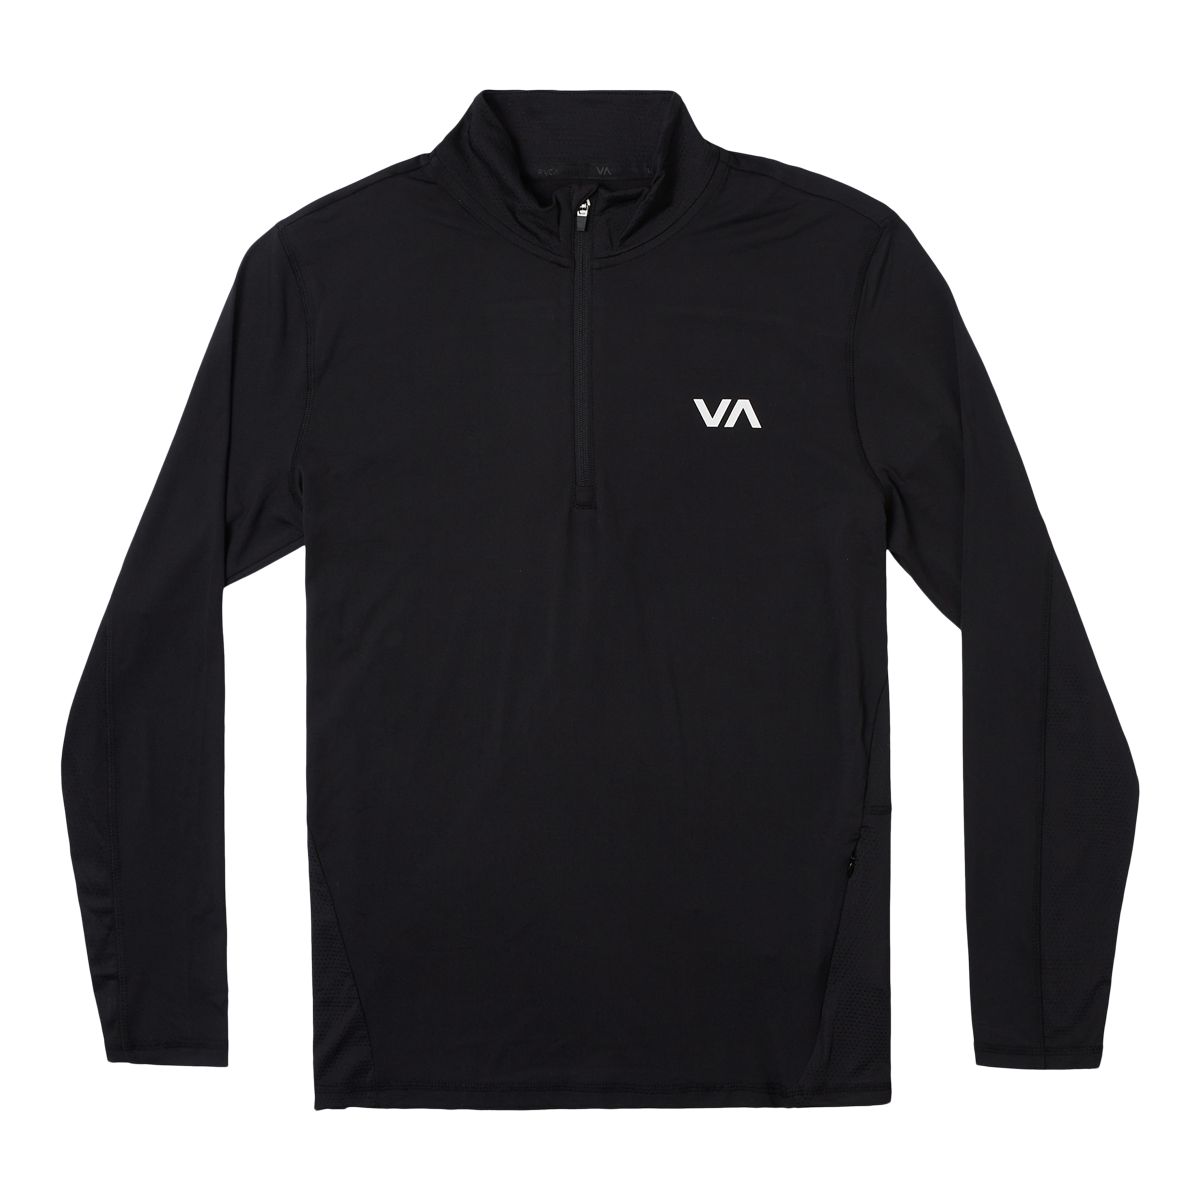 Rvca Sport Men's Vent 1/2 Zip Long Sleeve Top